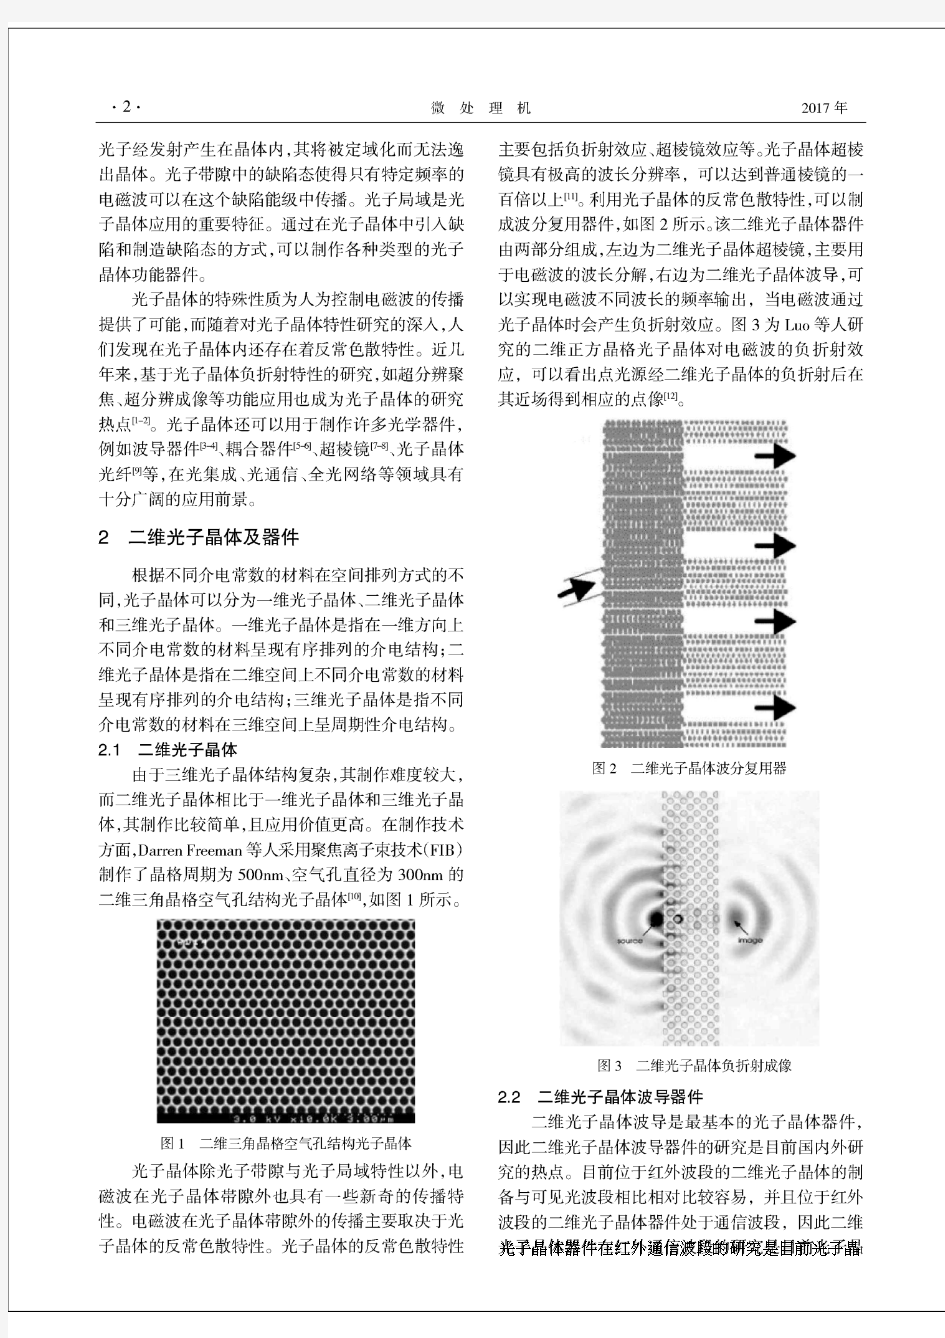 几种典型光子晶体波导器件及应用